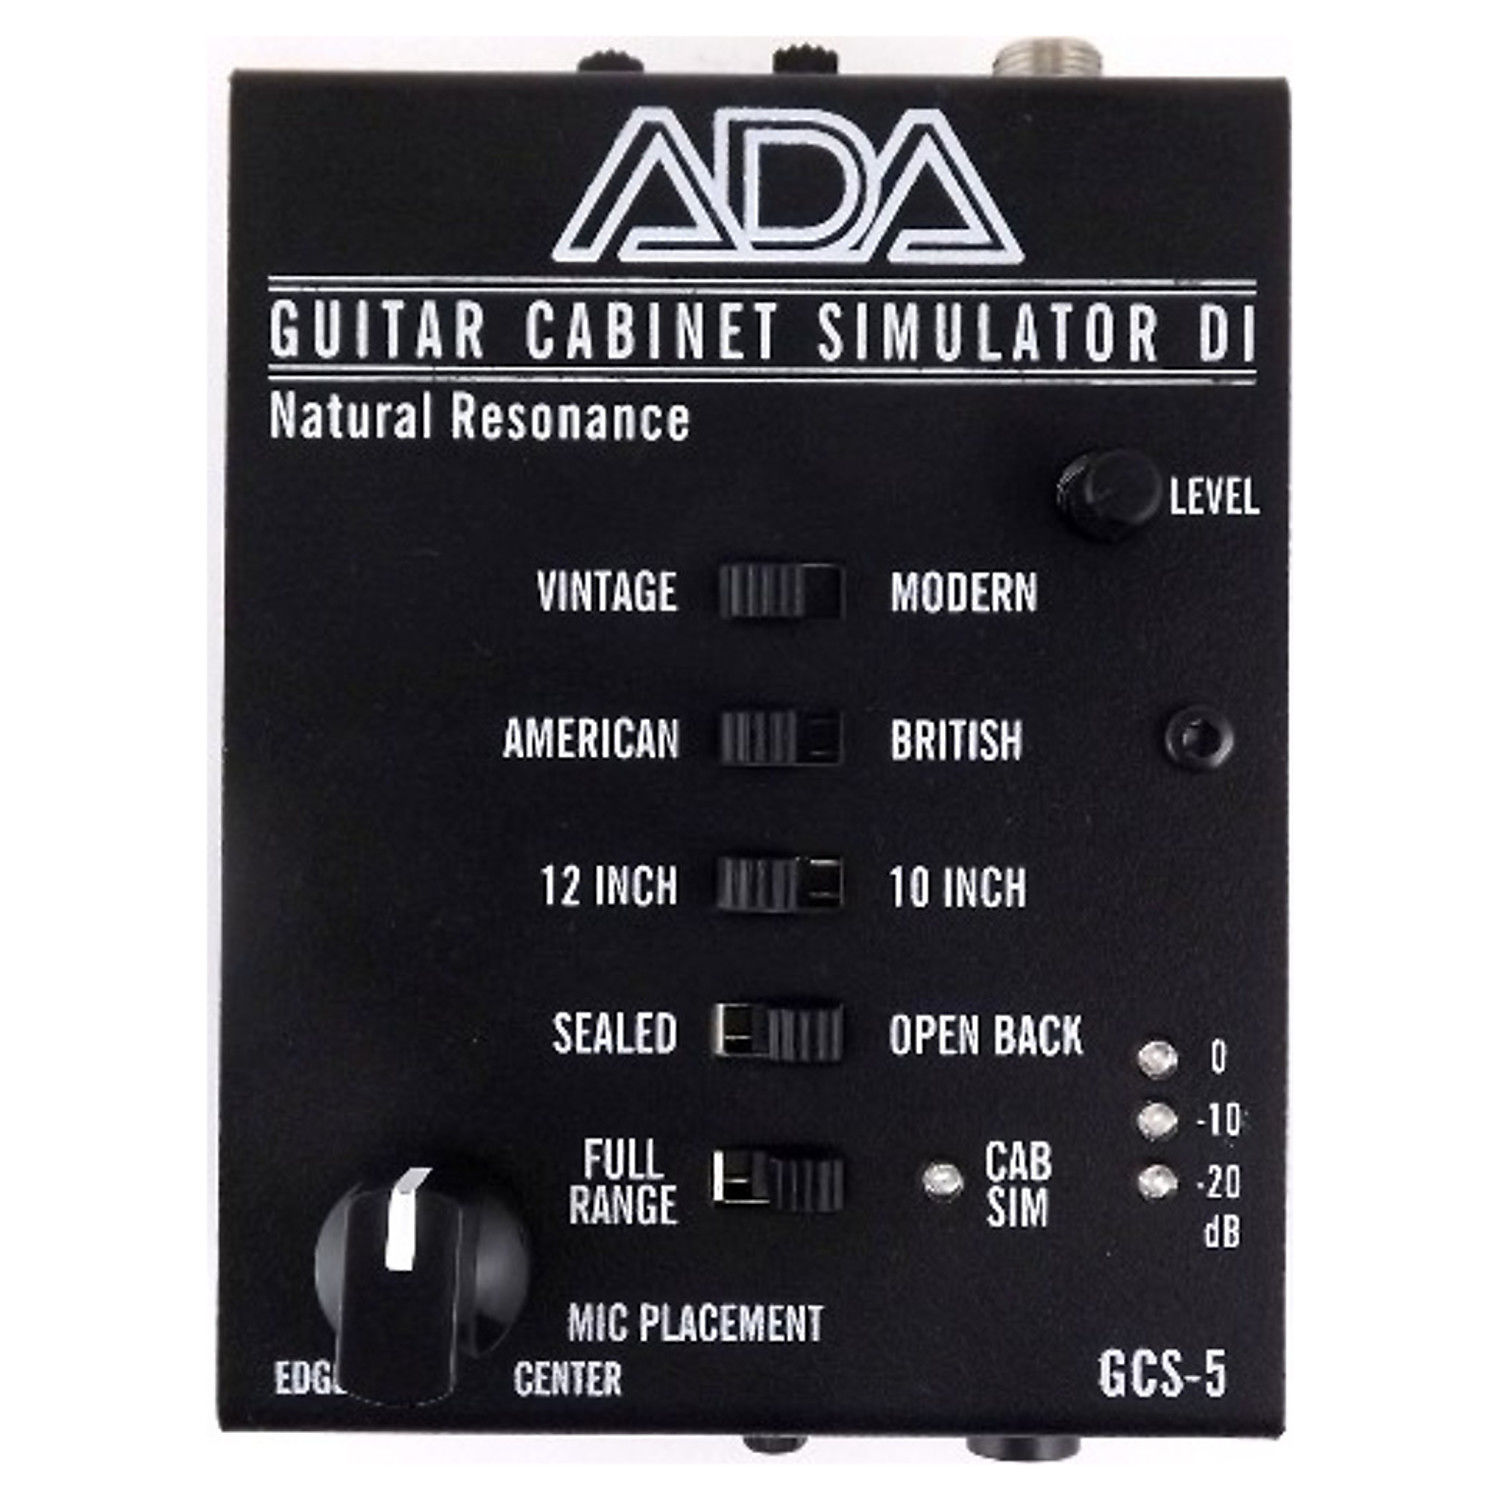 A/DA GCS-5 Guitar Cabinet Simulator/DI | Reverb